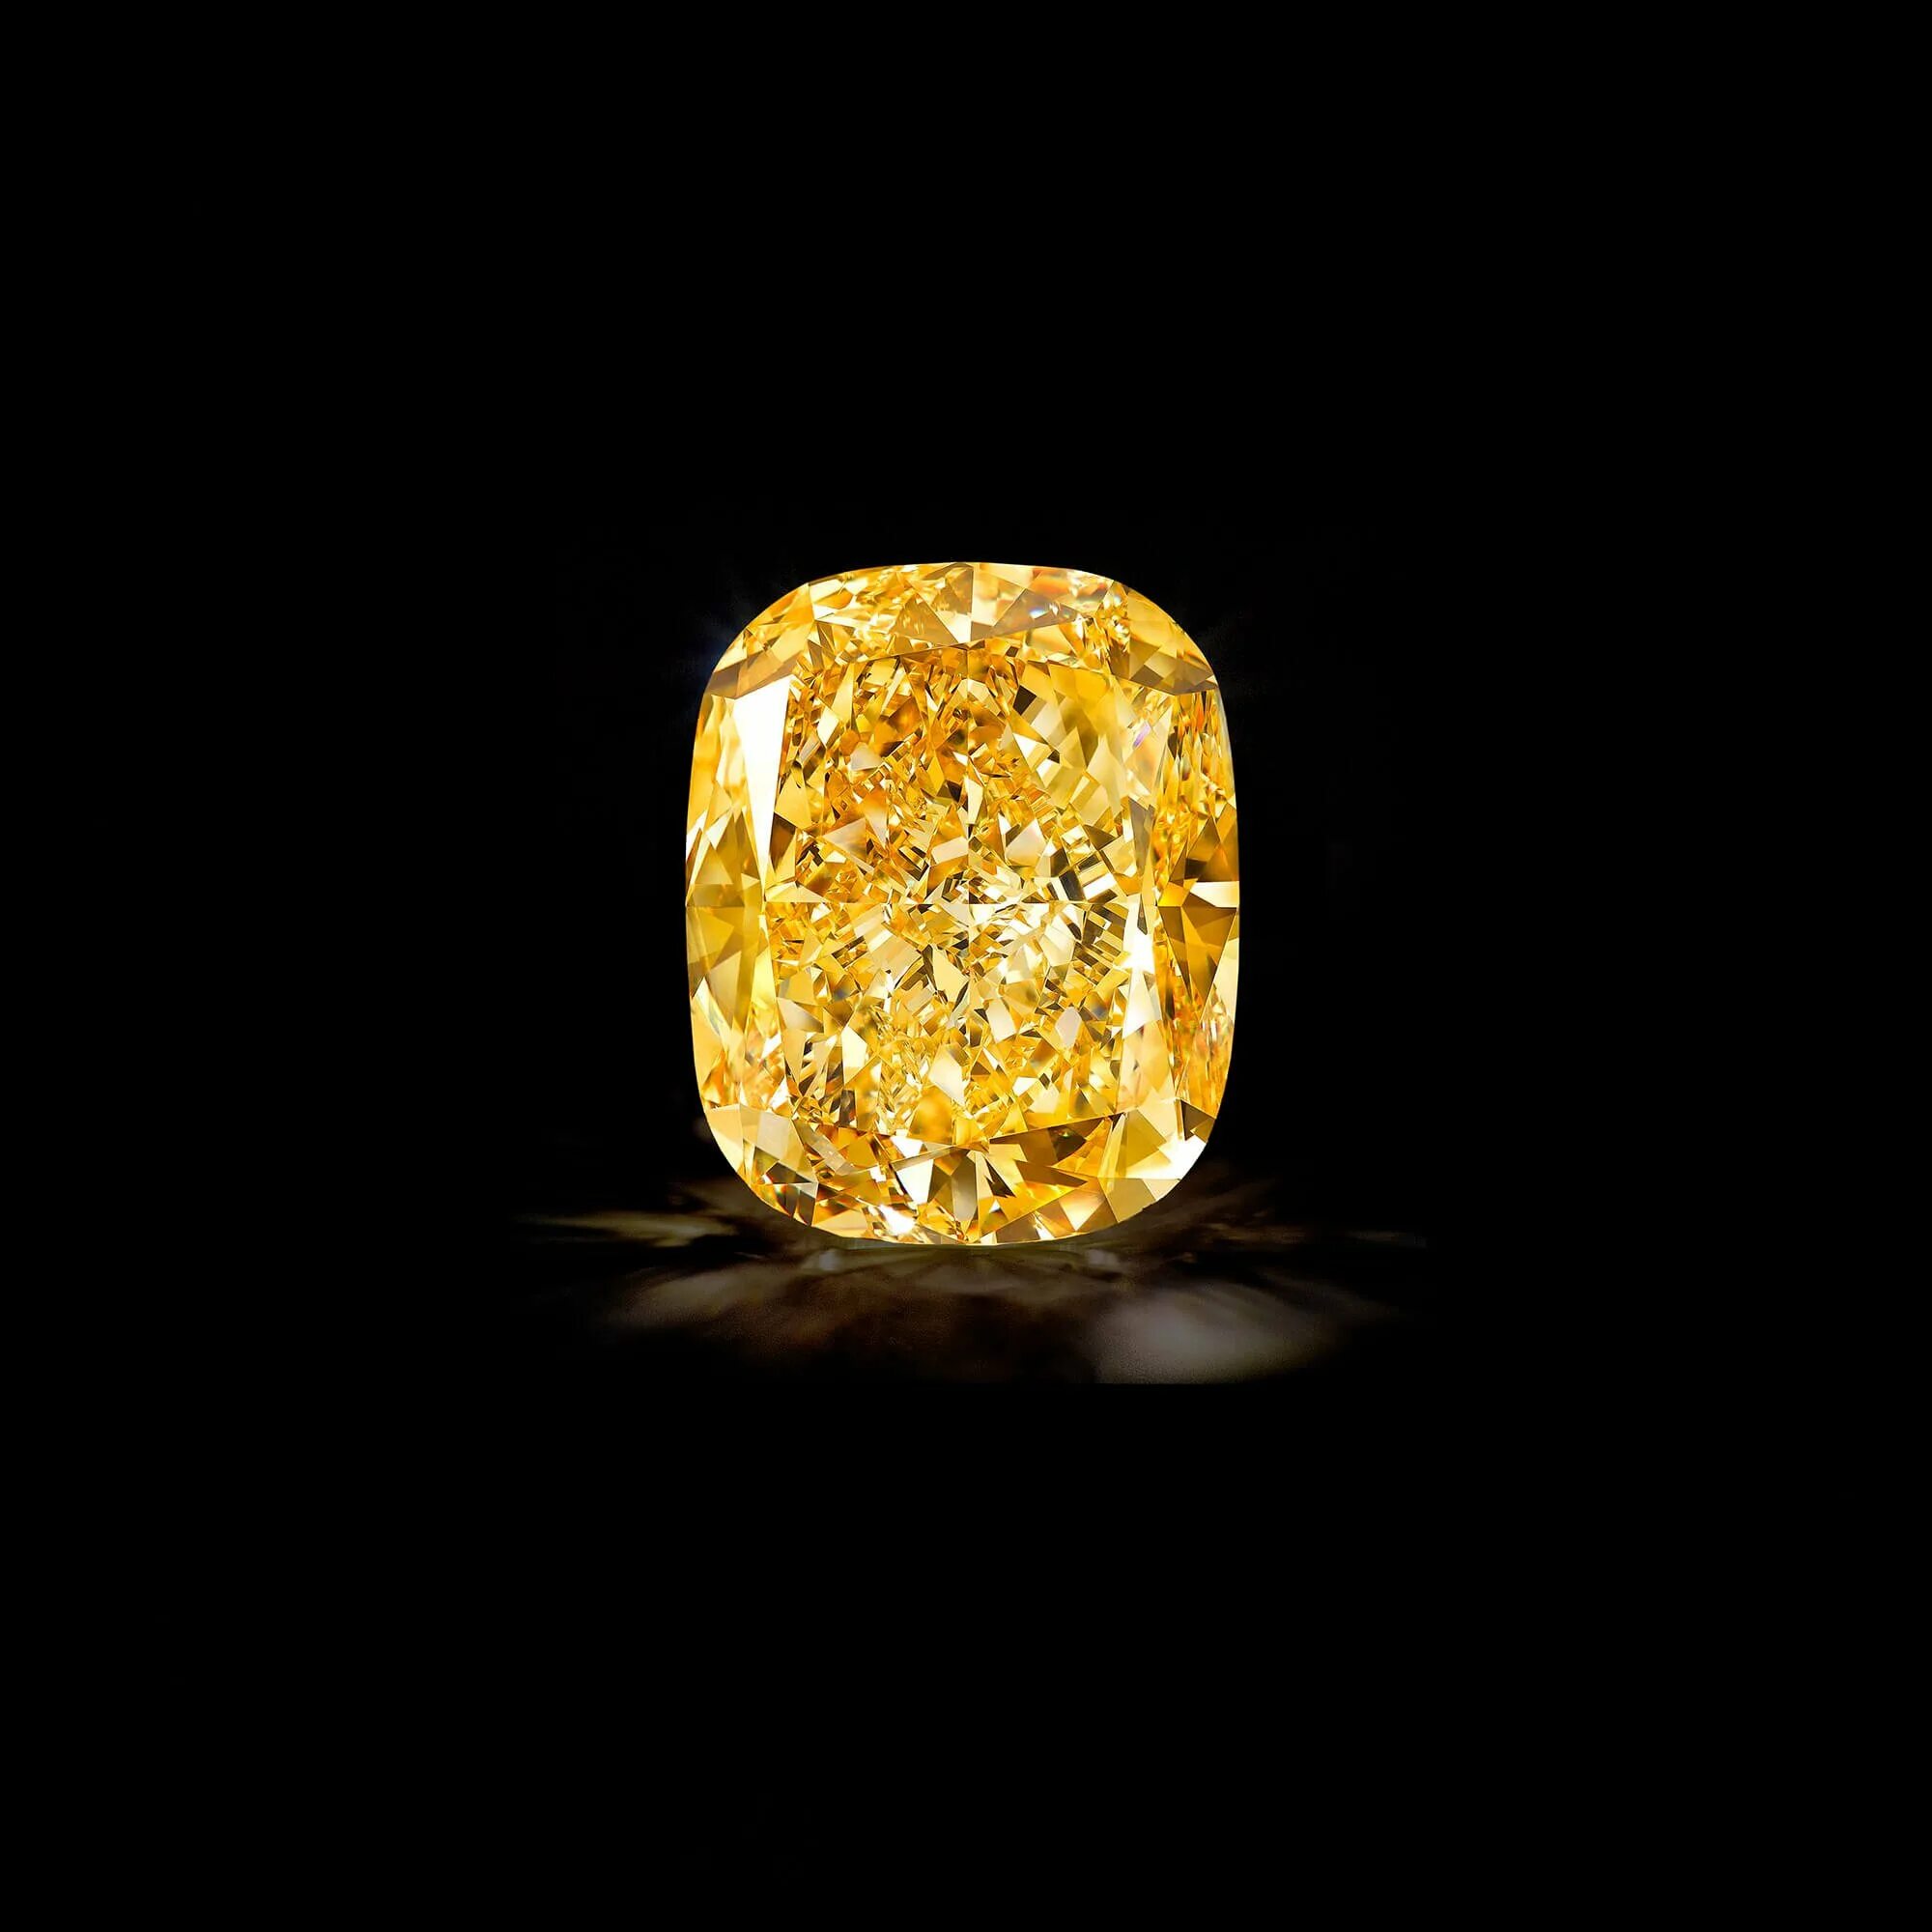 Diamond-Gold (Диамант золотой) стекло. Жёлтые неогранённые бриллианты. Алмаз будет золото